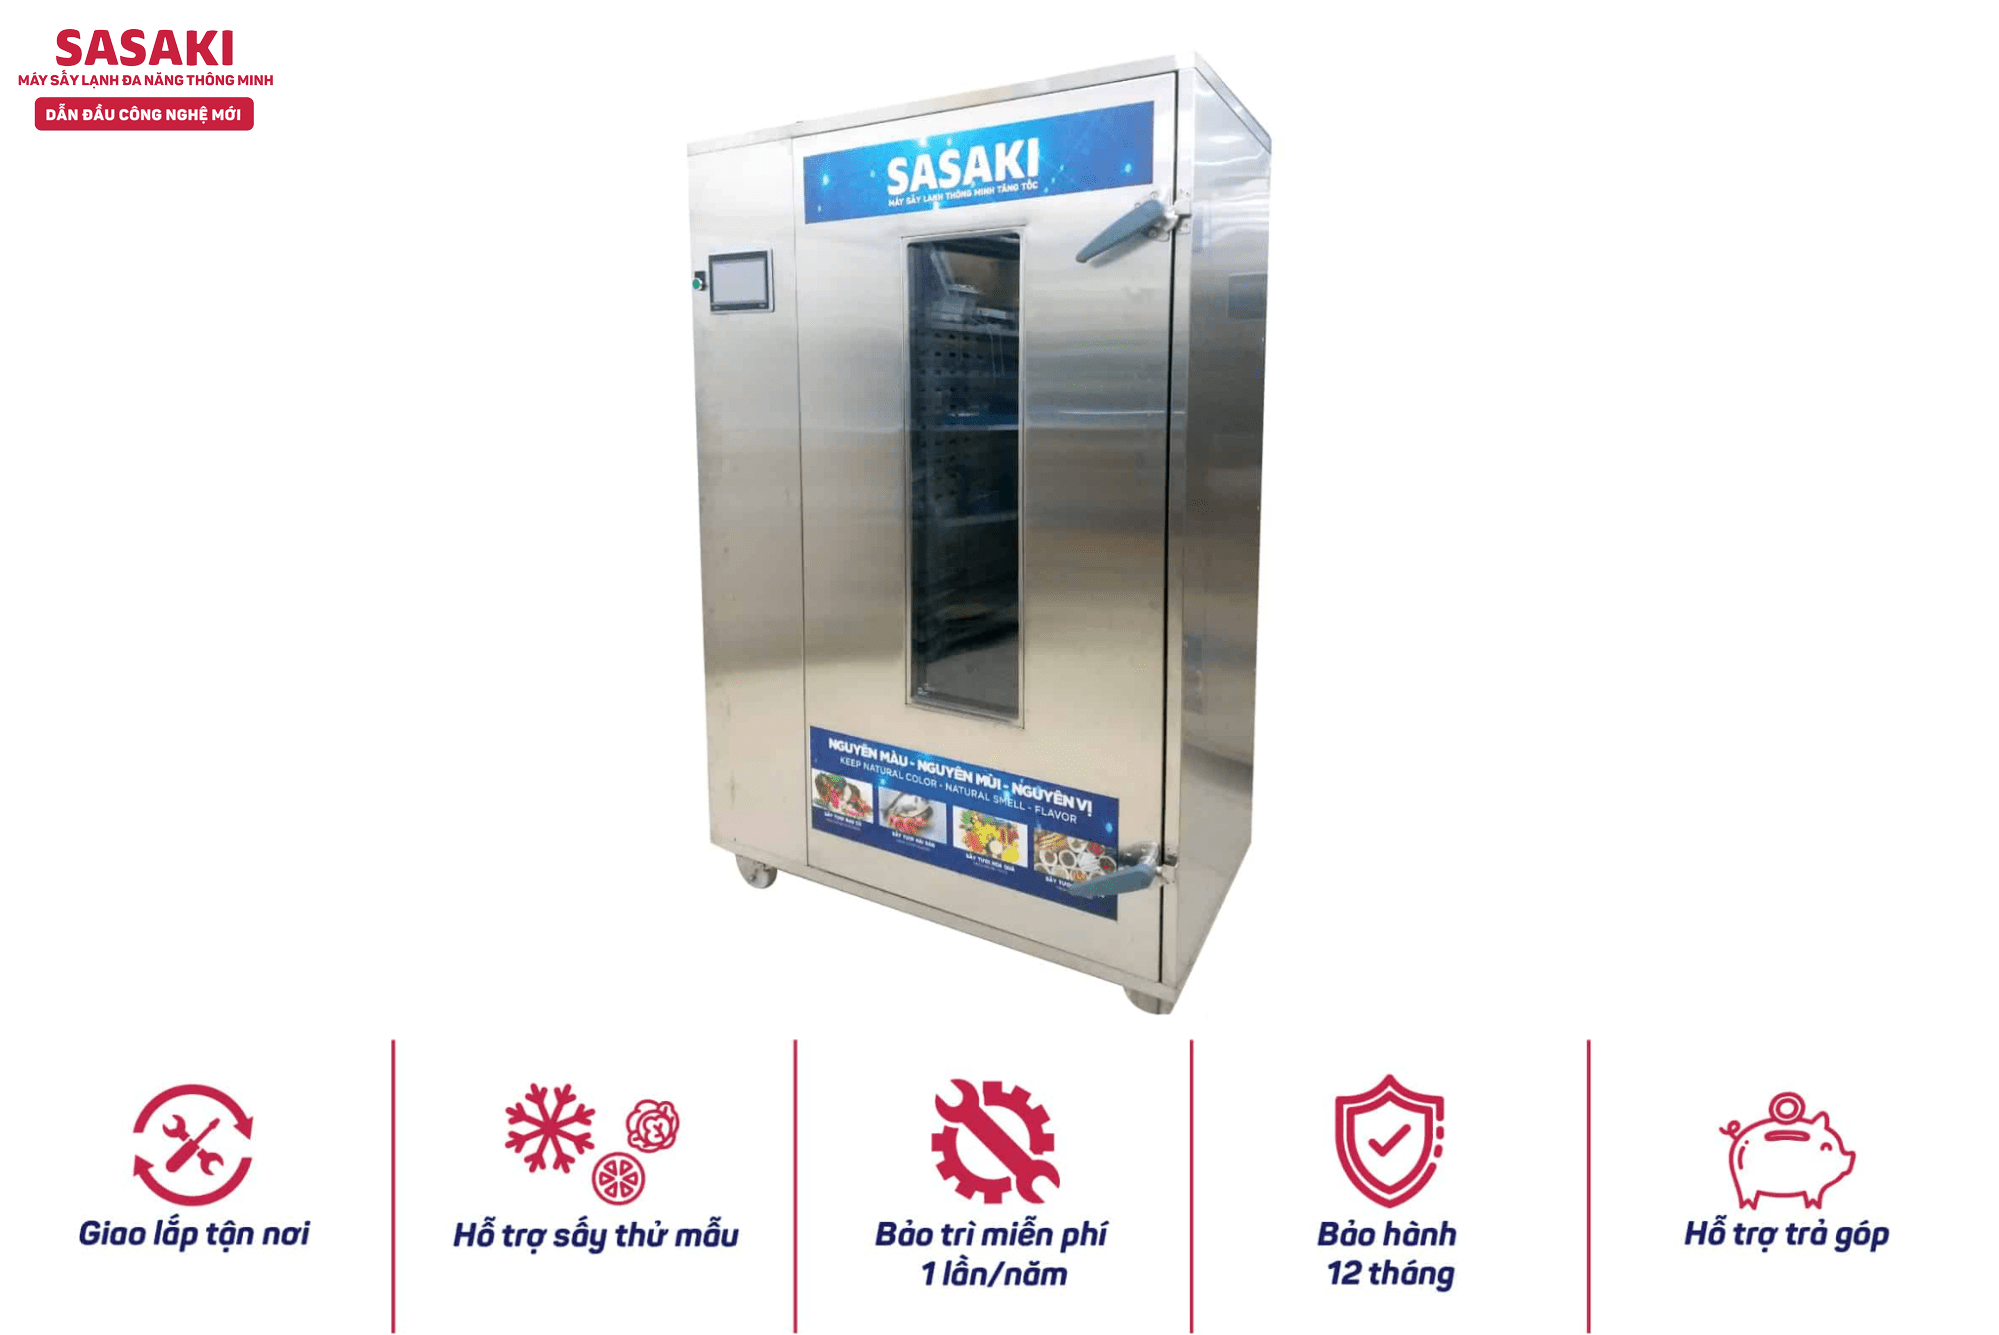 Máy sấy lạnh của SASAKI được sản xuất theo công nghệ châu Âu hiện đại